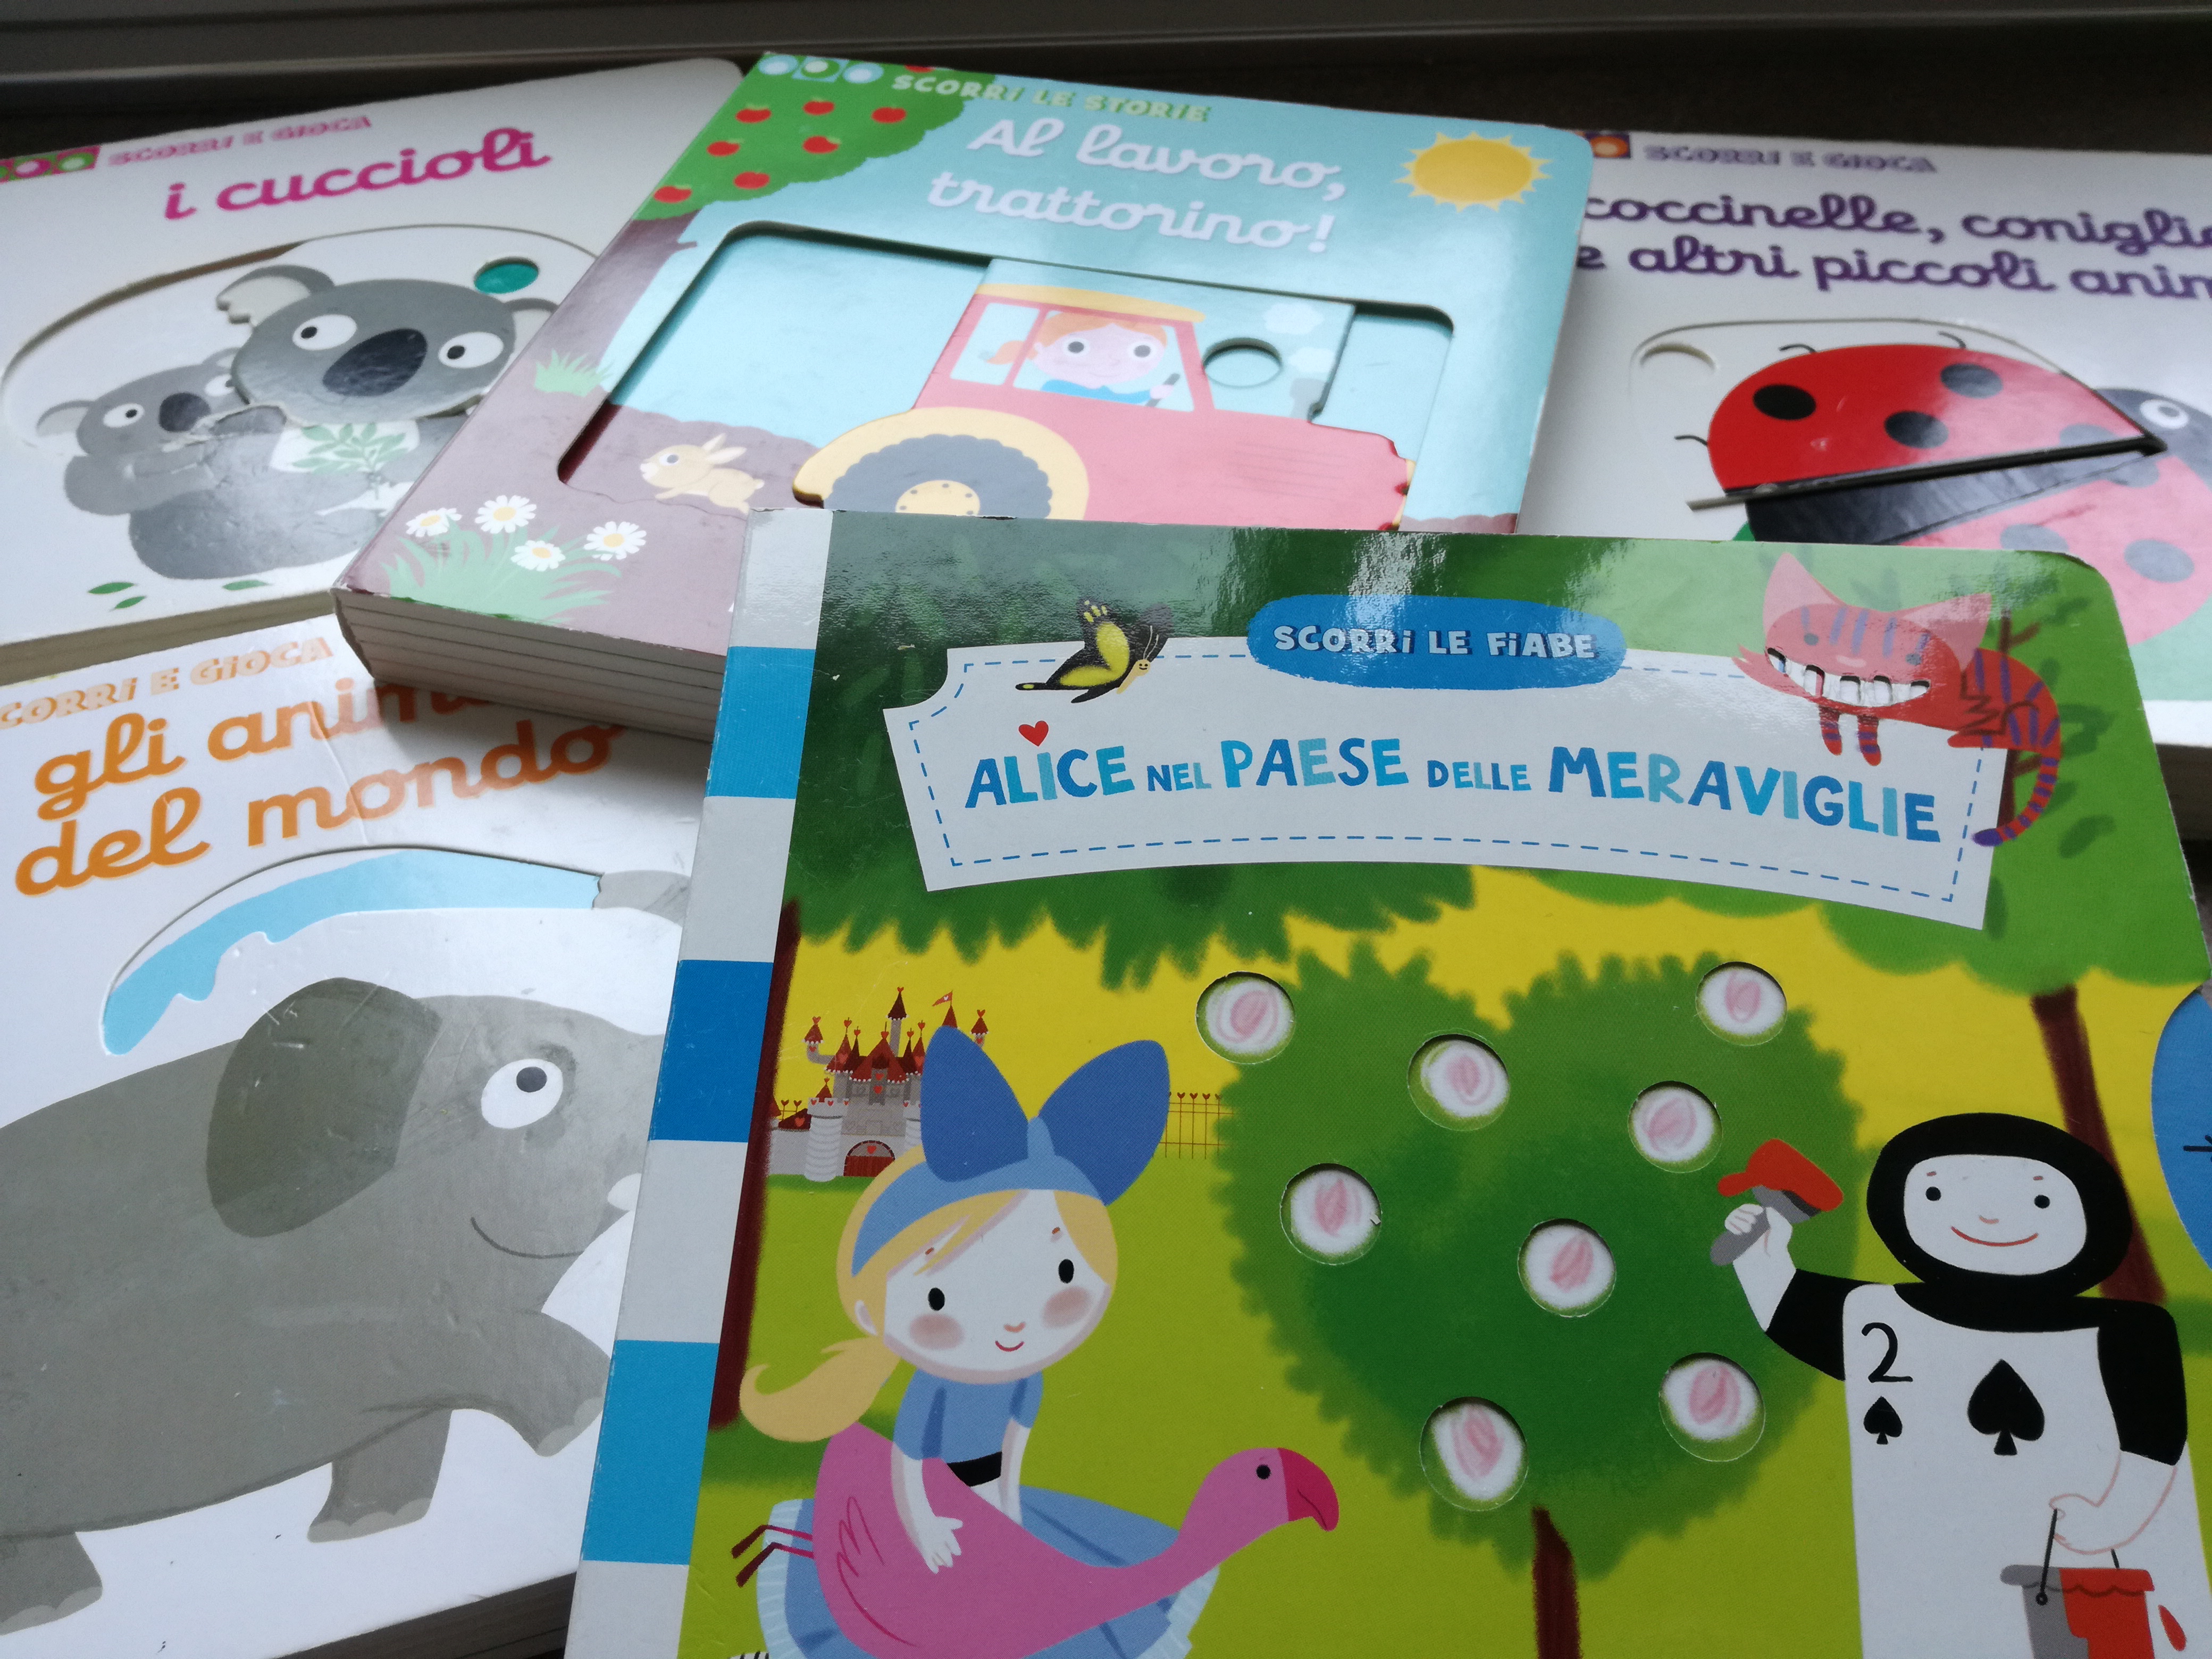 Libri per bambini da 1 a 2 anni: Chi con chi e Segui il dito - Gallucci ·  Pane, Amore e Creatività